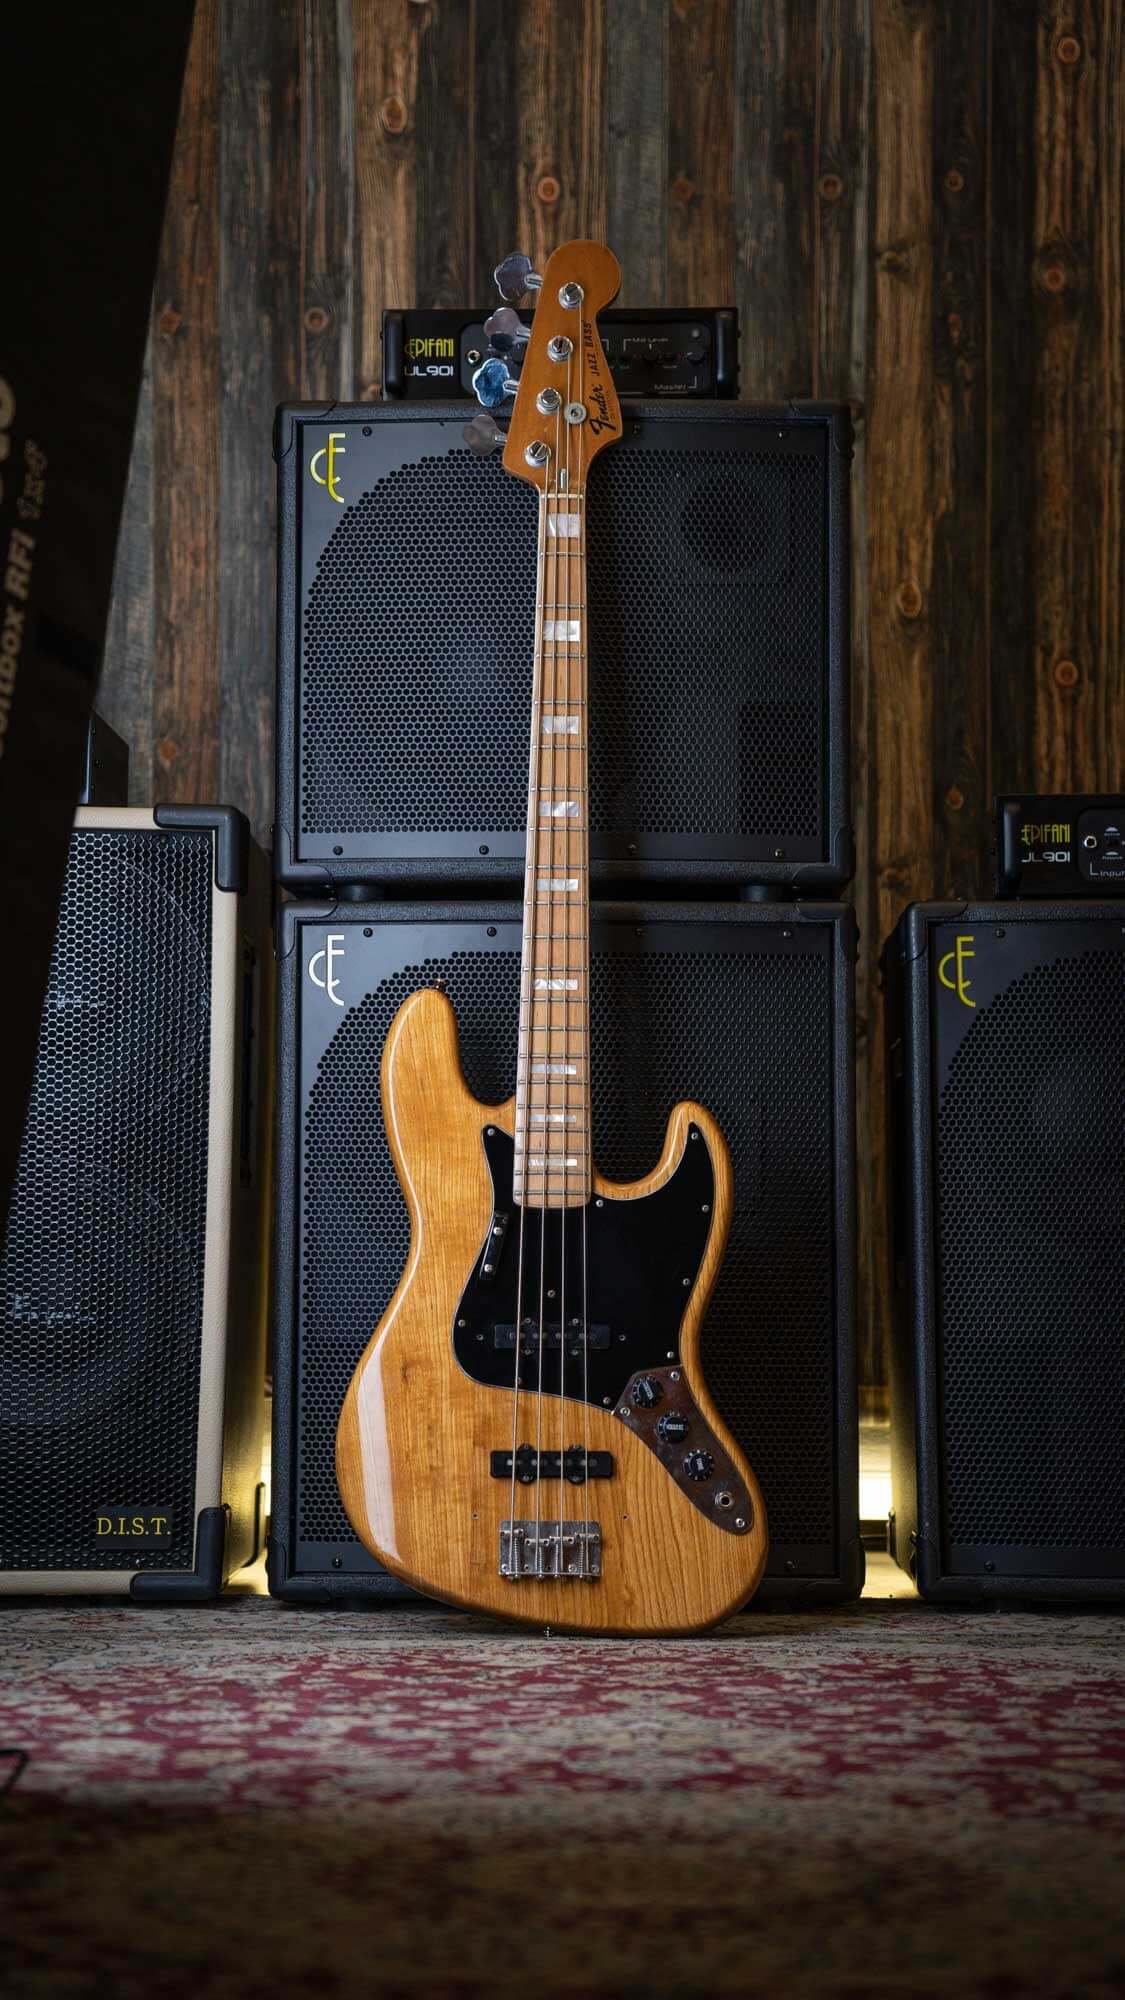 Fender Jazz Bass Natural 1977